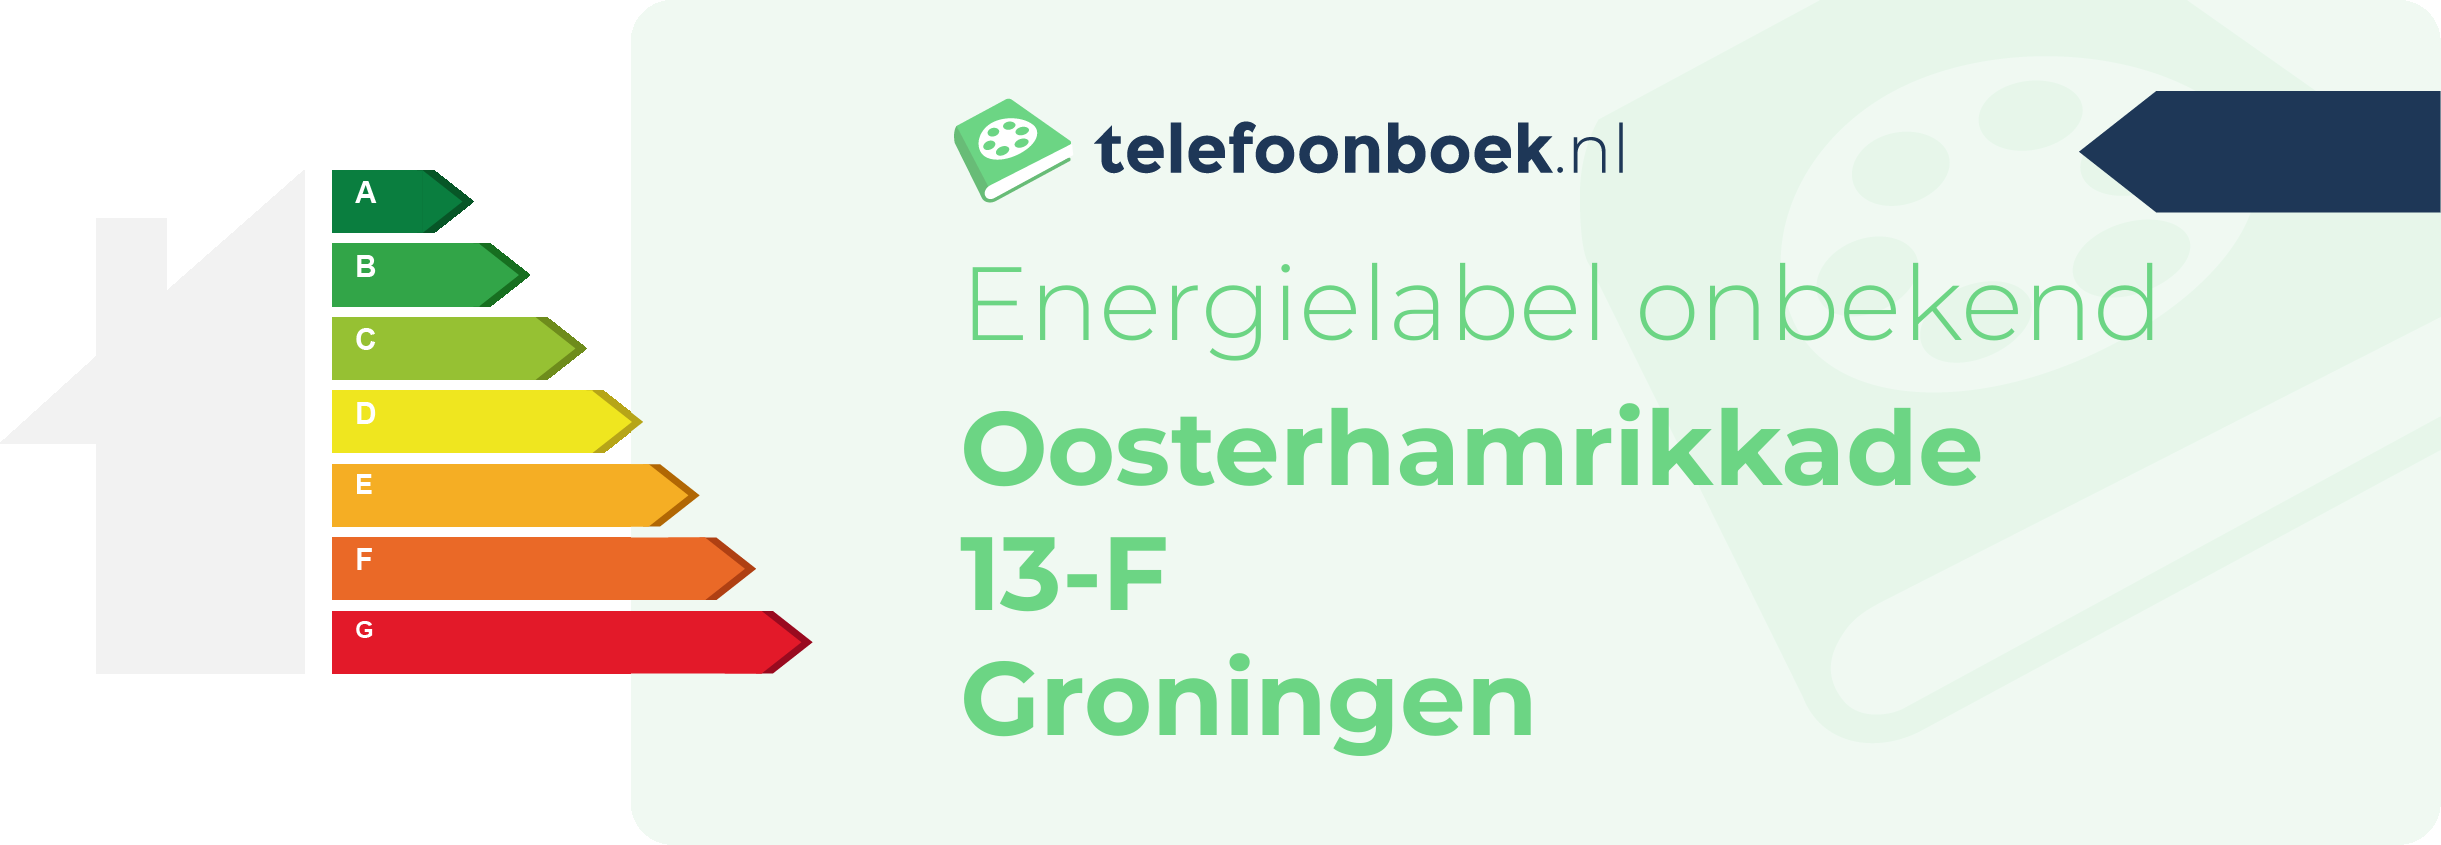 Energielabel Oosterhamrikkade 13-F Groningen